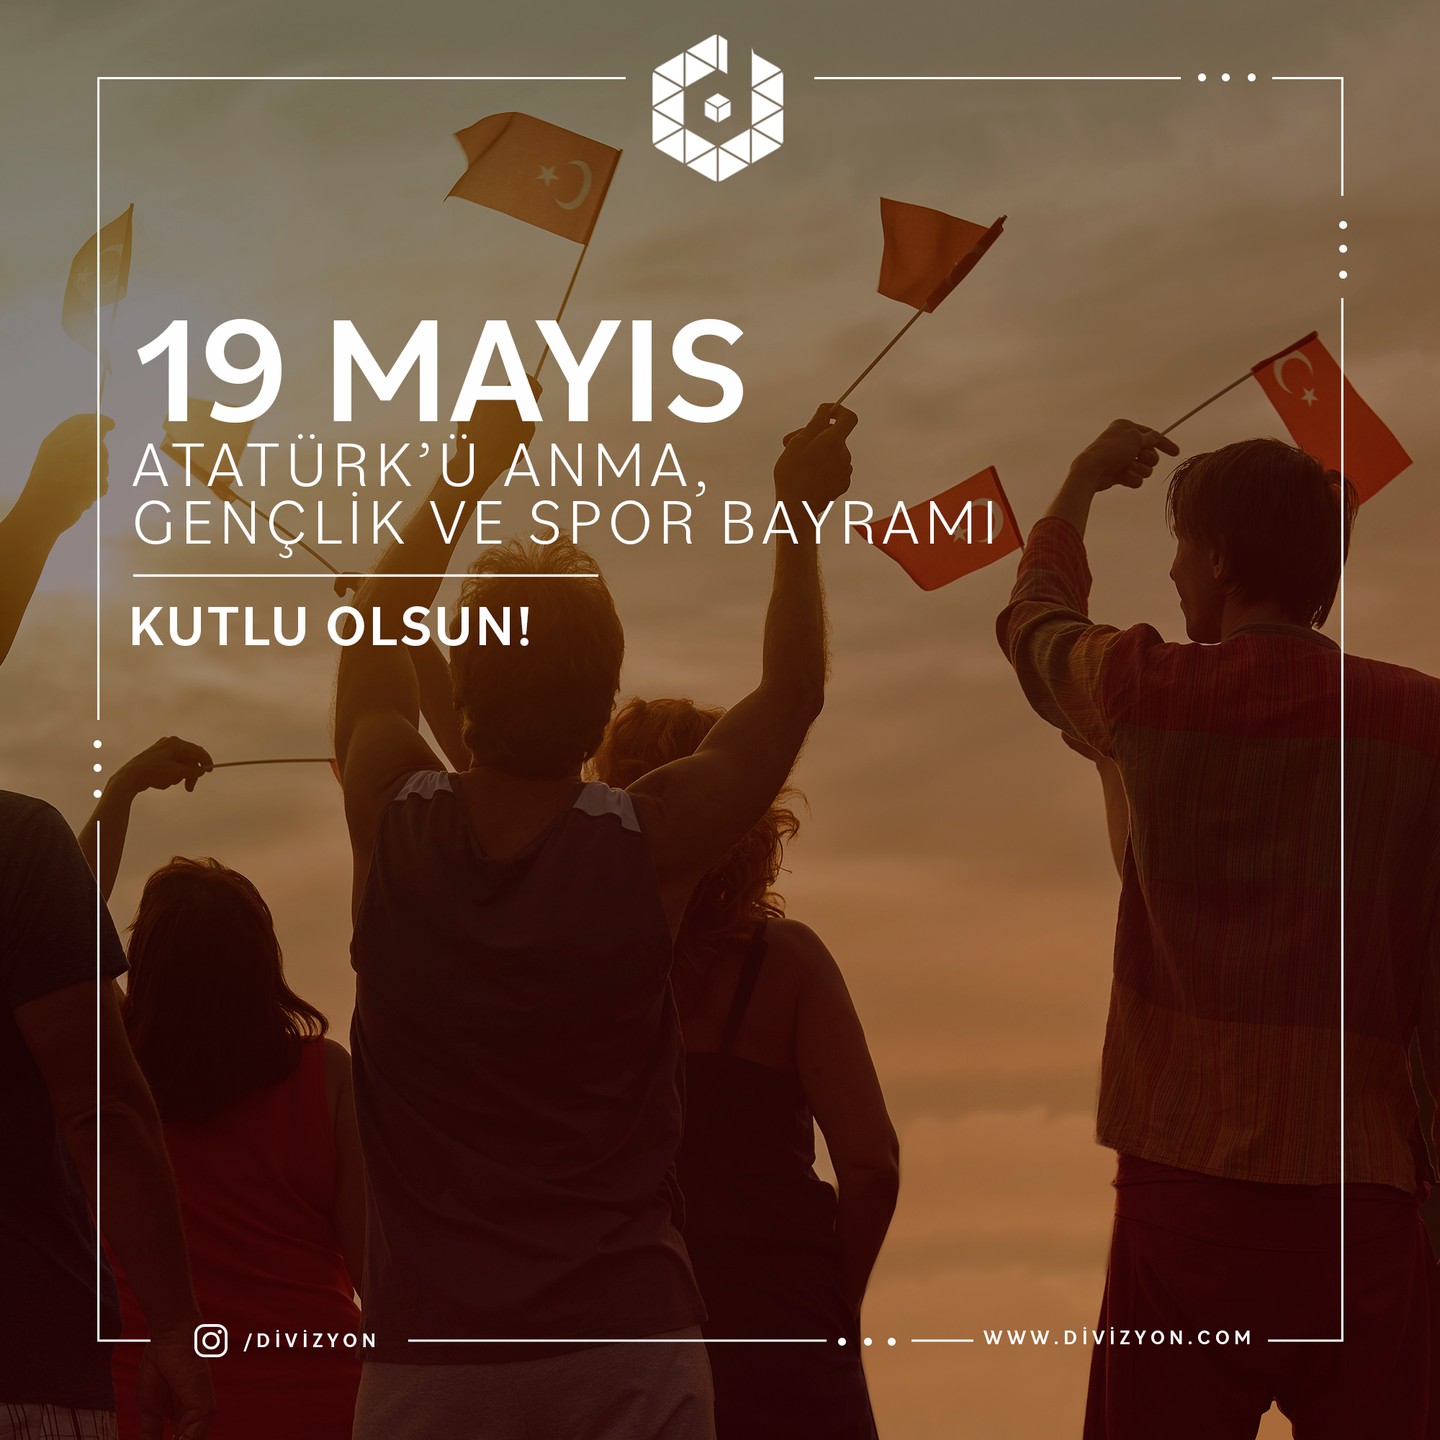 19 Mayıs Atatürk’ü Anma Gençlik ve Spor Bayramınız kutlu olsun.

#19Mayıs1919 #GaziMustafaKemal #Atatürk #19Mayıs